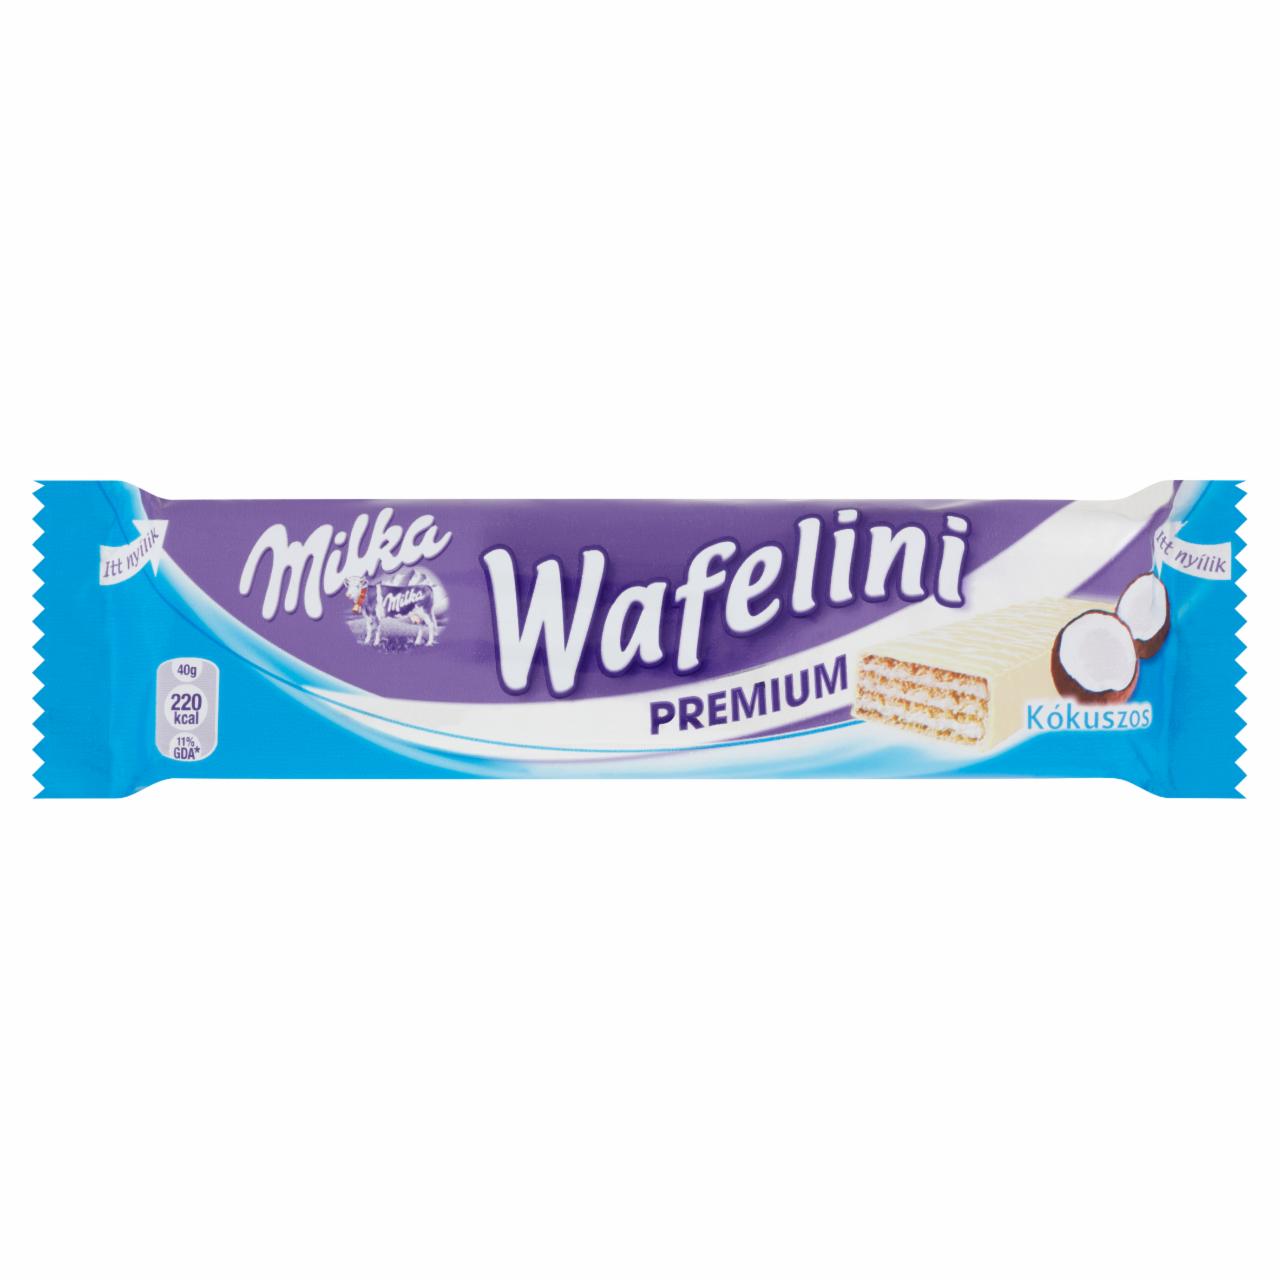 Képek - Milka Wafelini Premium fehércsokoládés, kókuszos ostya 40 g